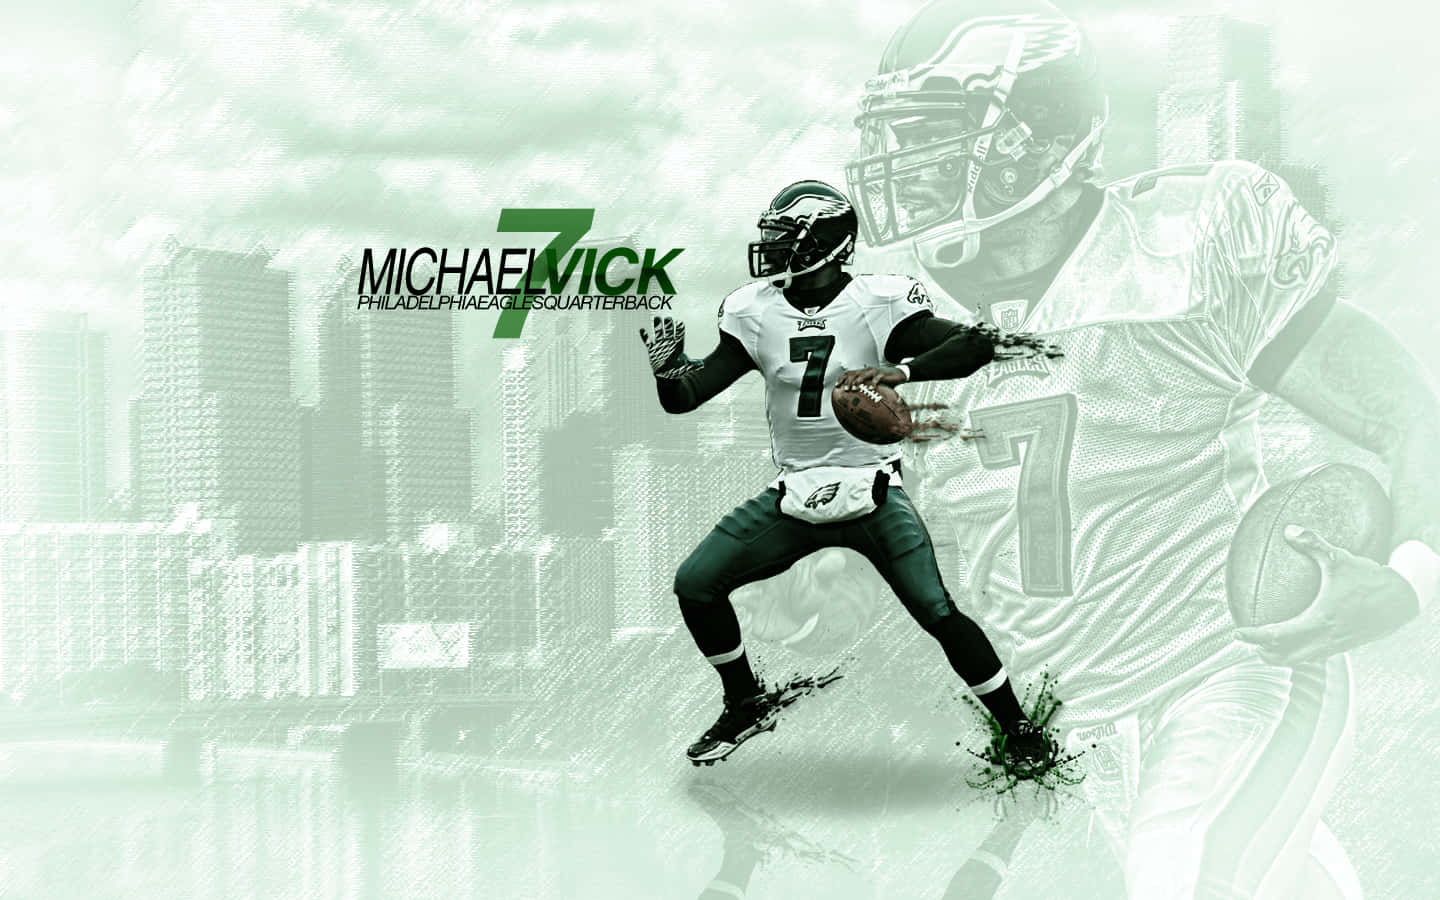 "Michael Vick - NFL Quarterback" Wallpaper